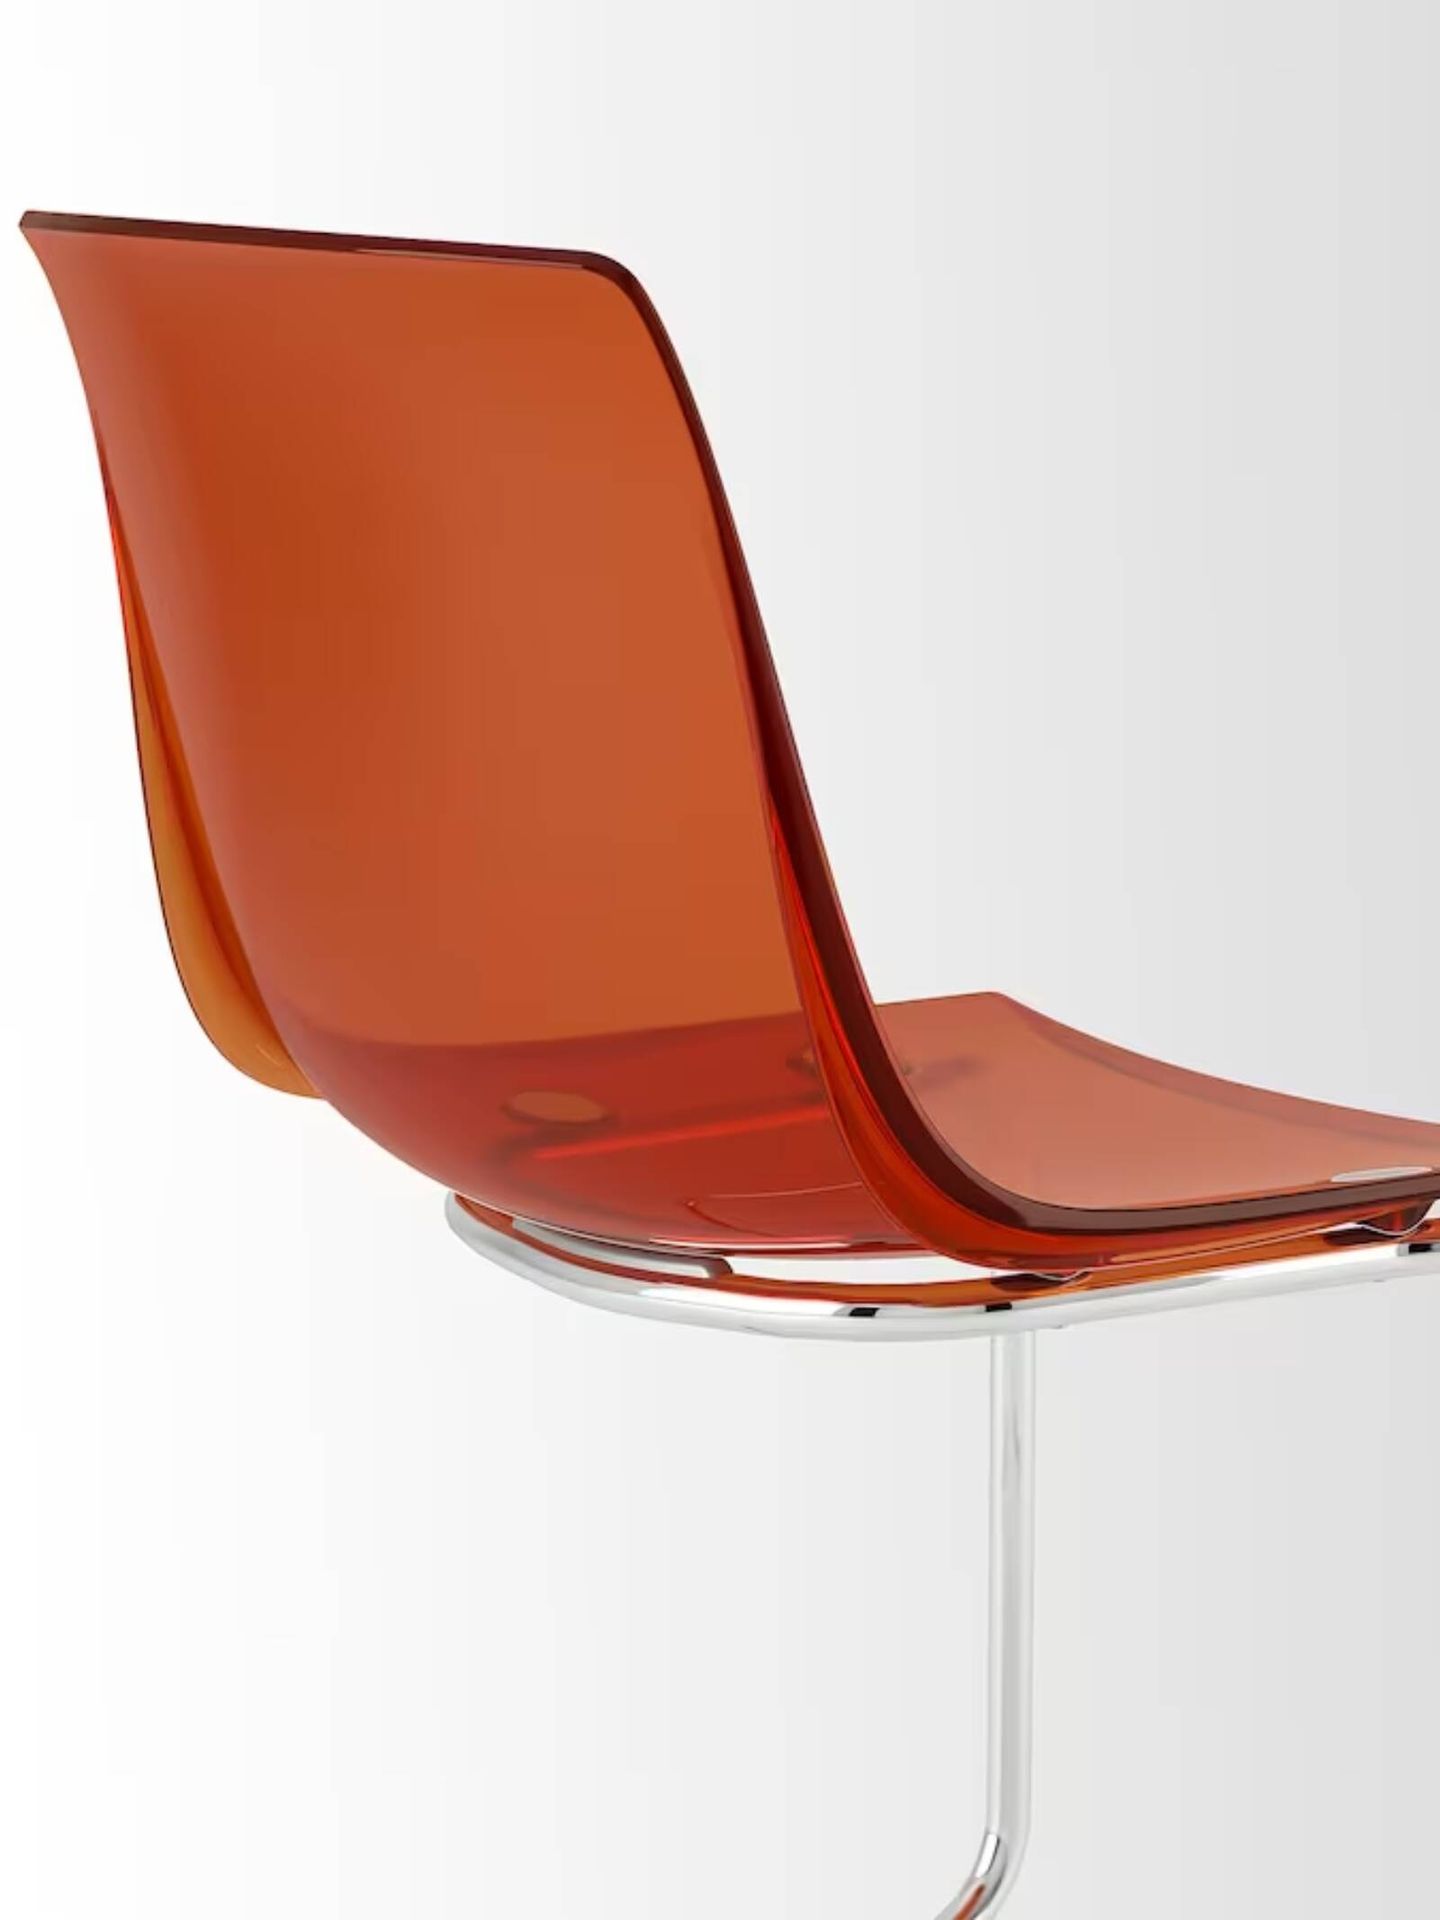 Ikea apuesta por una silla de diseño confortable. (Cortesía/Ikea)